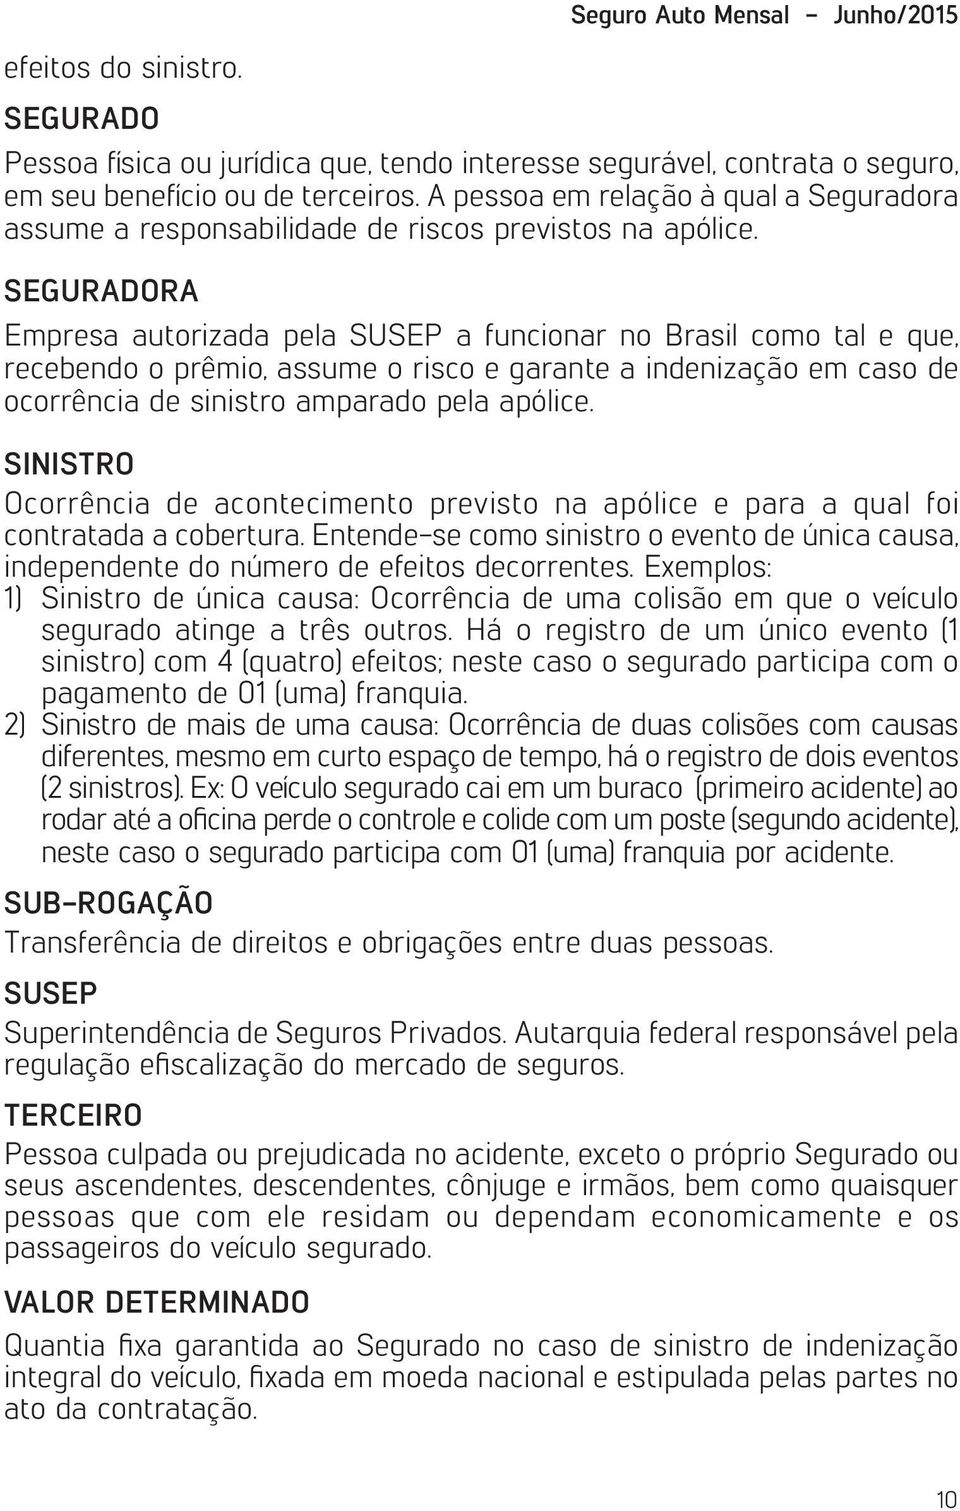 SEGURADORA Empresa autorizada pela SUSEP a funcionar no Brasil como tal e que, recebendo o prêmio, assume o risco e garante a indenização em caso de ocorrência de sinistro amparado pela apólice.